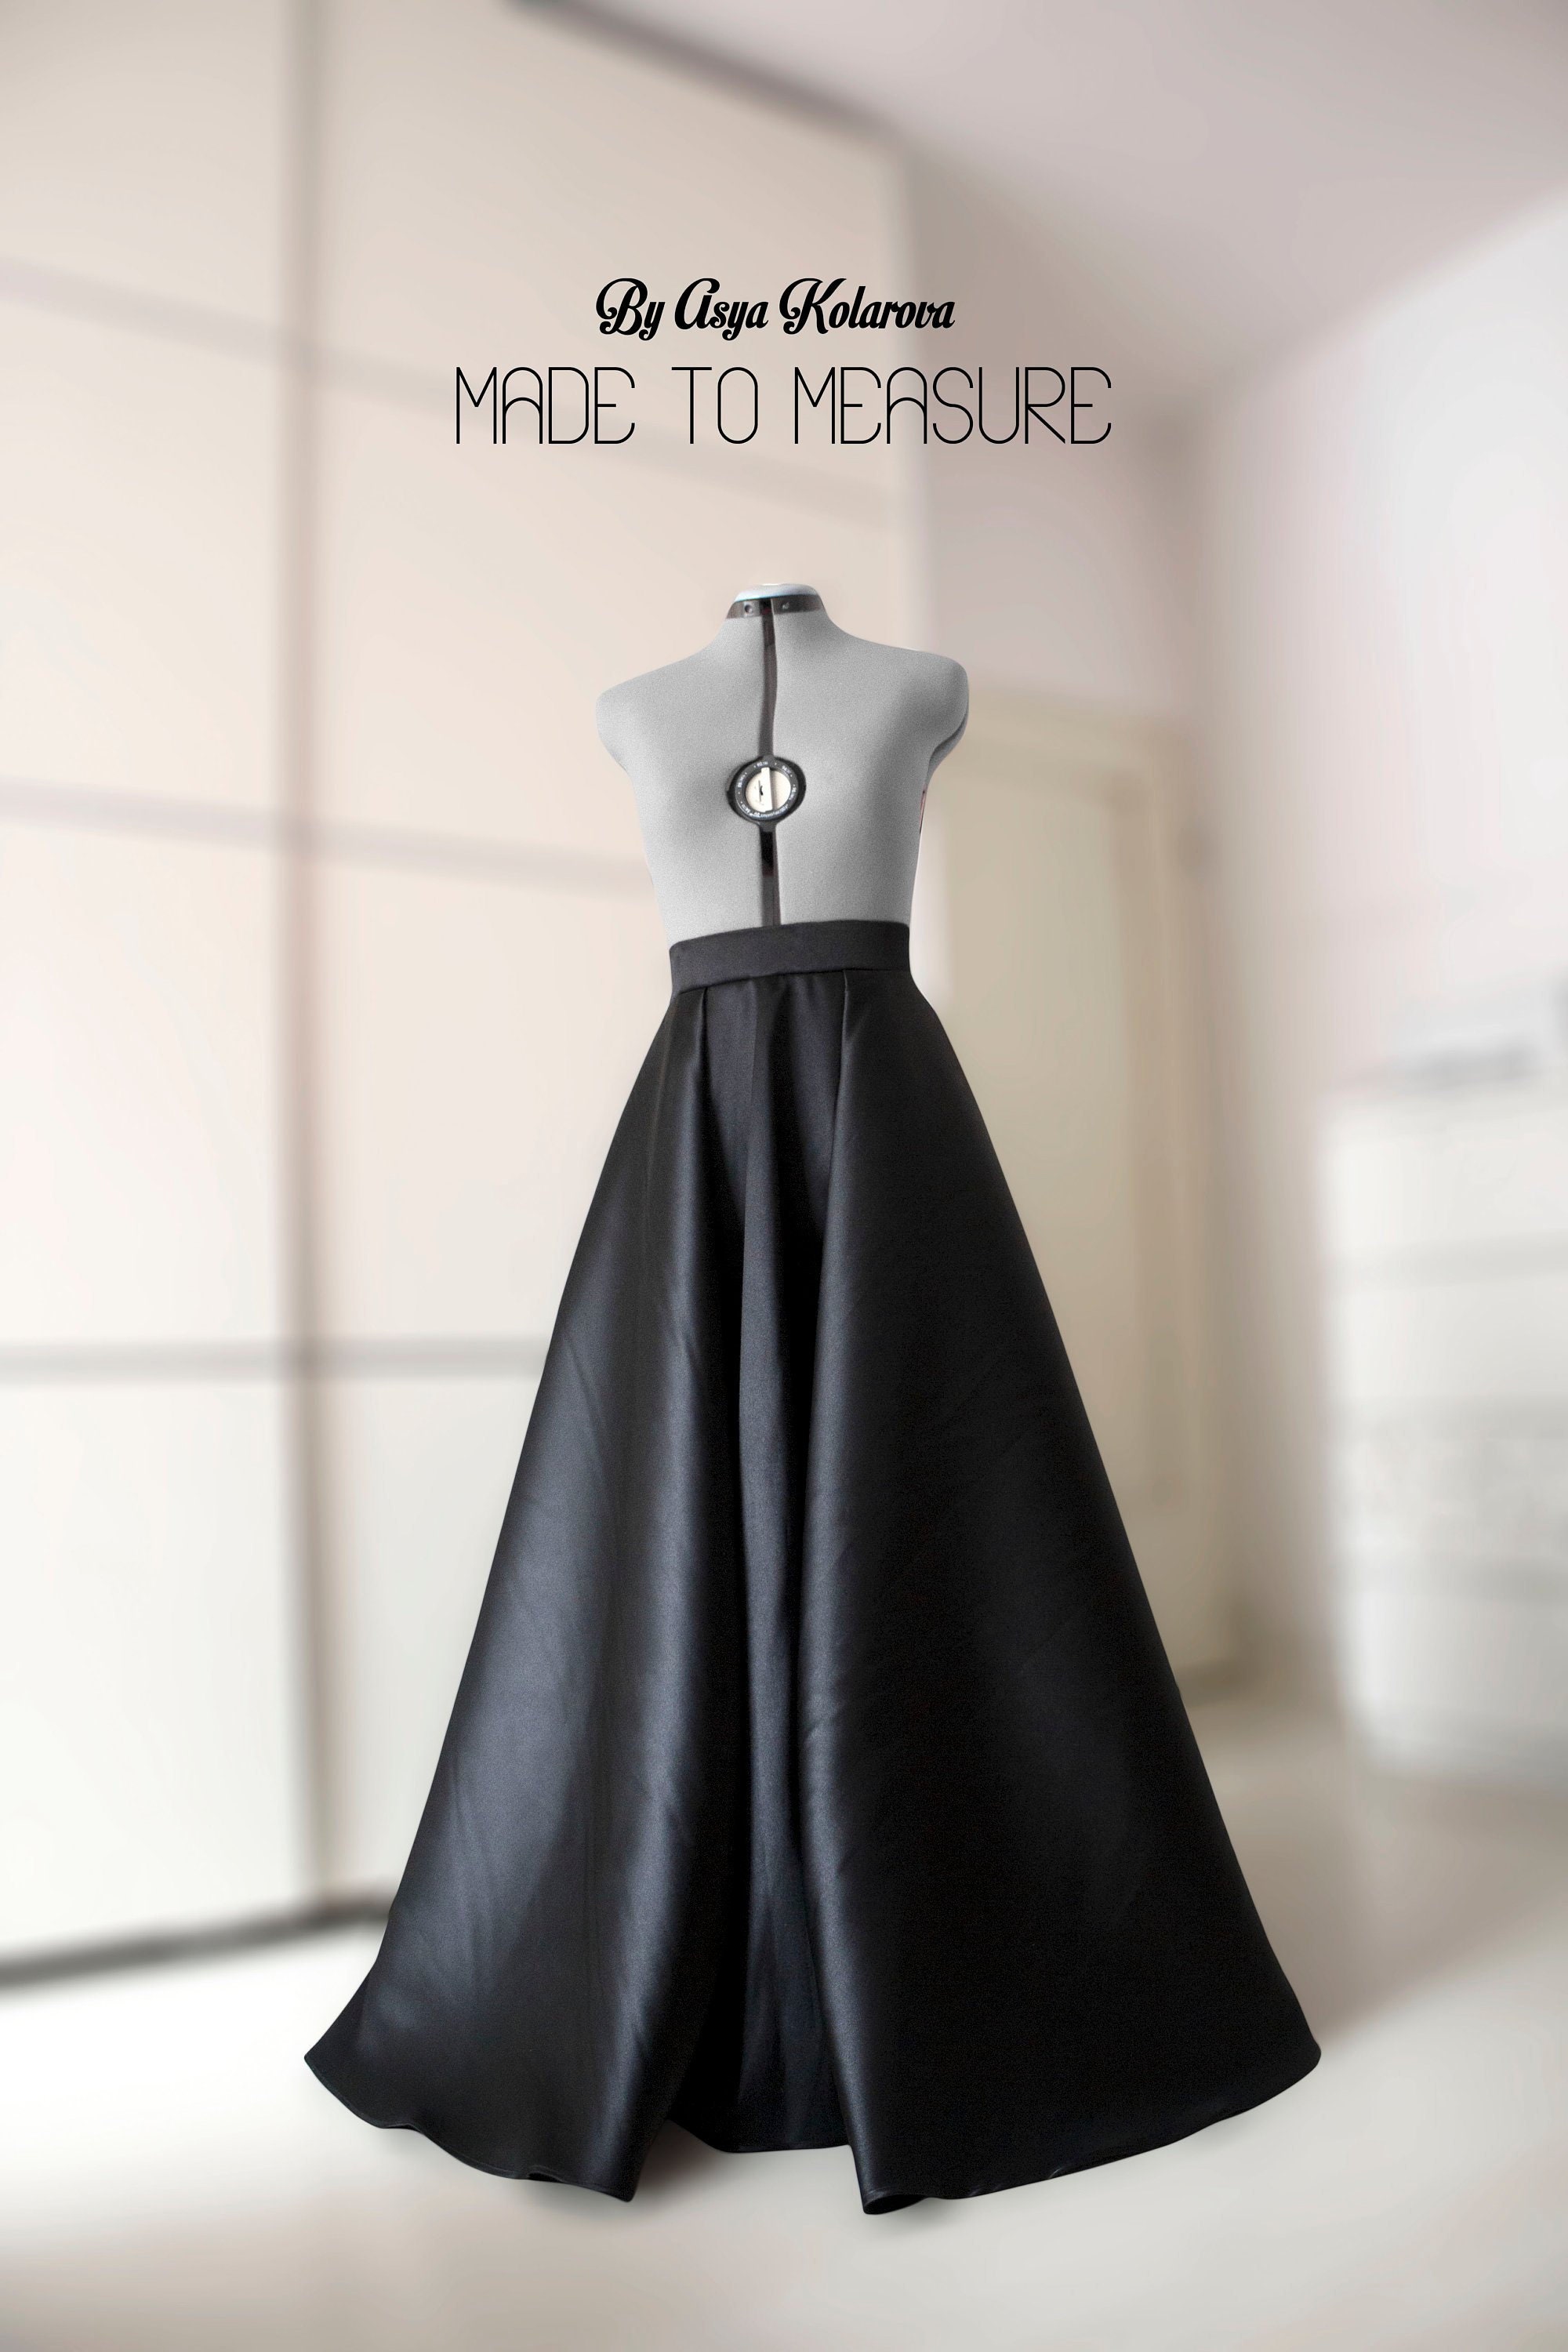 Satin Ball Skirt Long Formal Skirt Black Ball Gown Skirt Maxi  Etsy